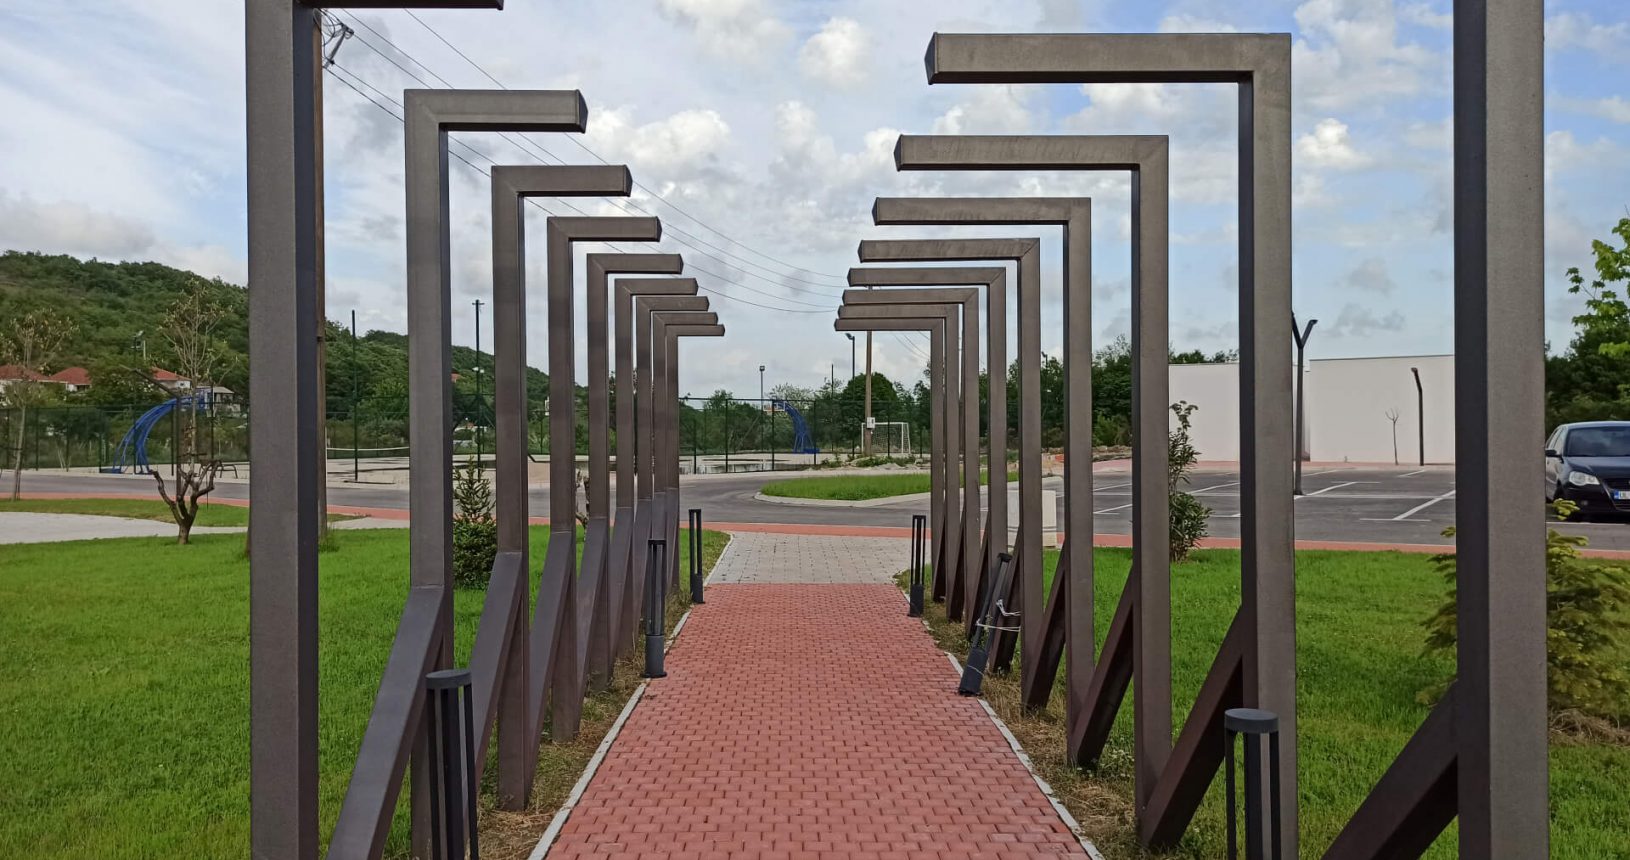 Interesting installation at Hajdari Family Public Park